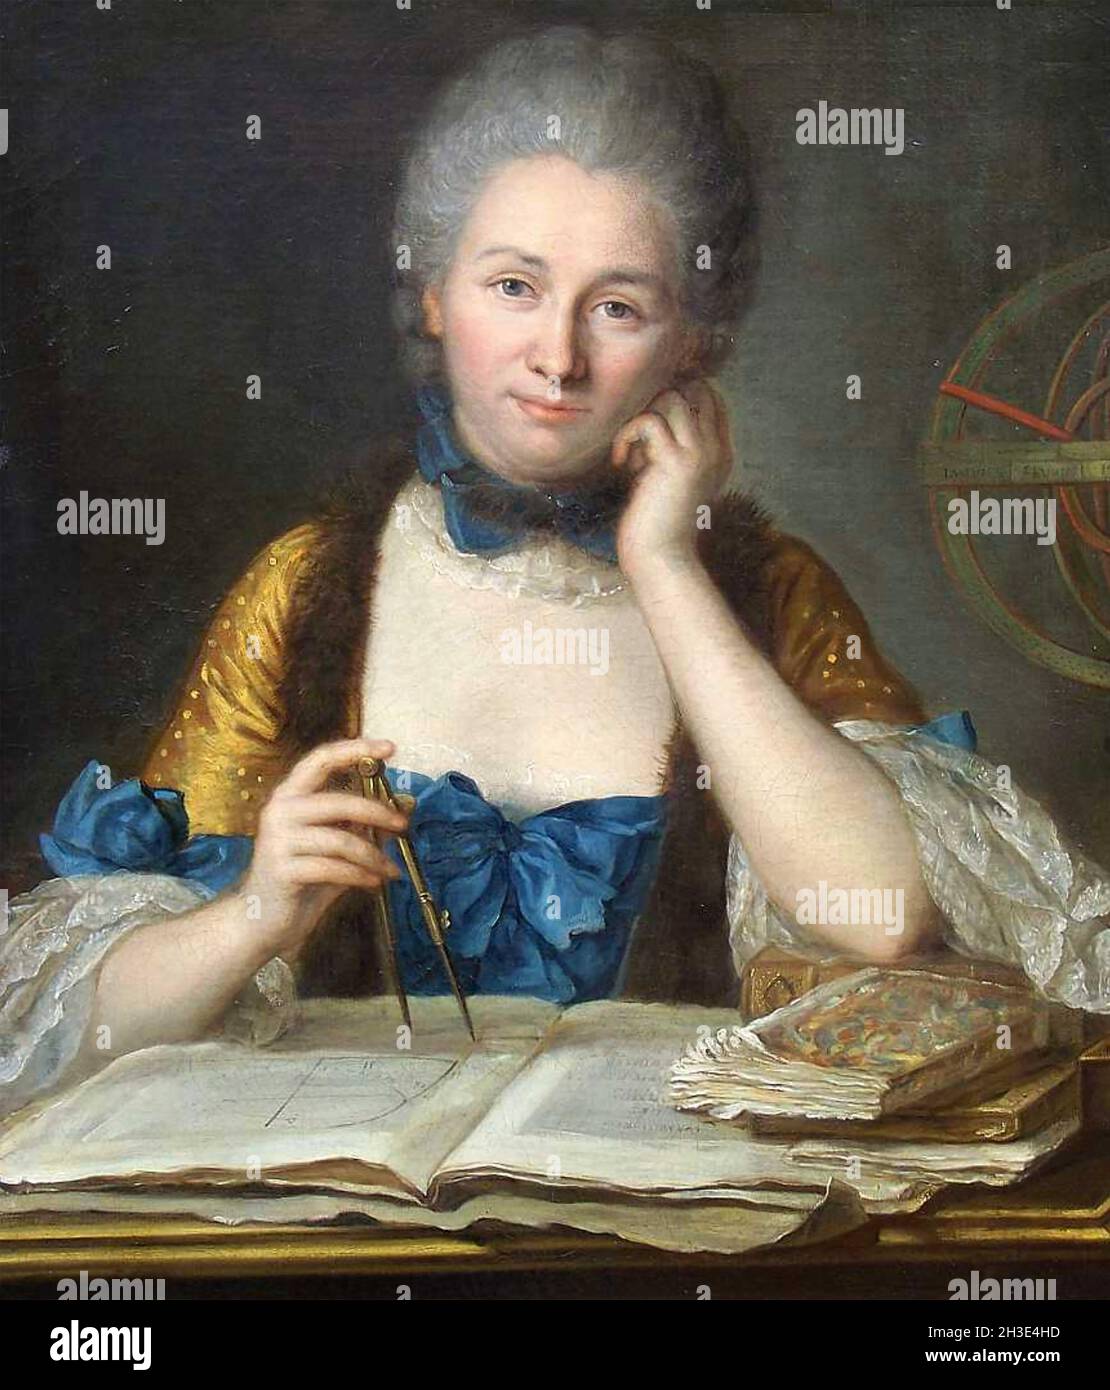 ÉMILE du Châtelet (1706-1749) matematico e filosofo francese Foto Stock